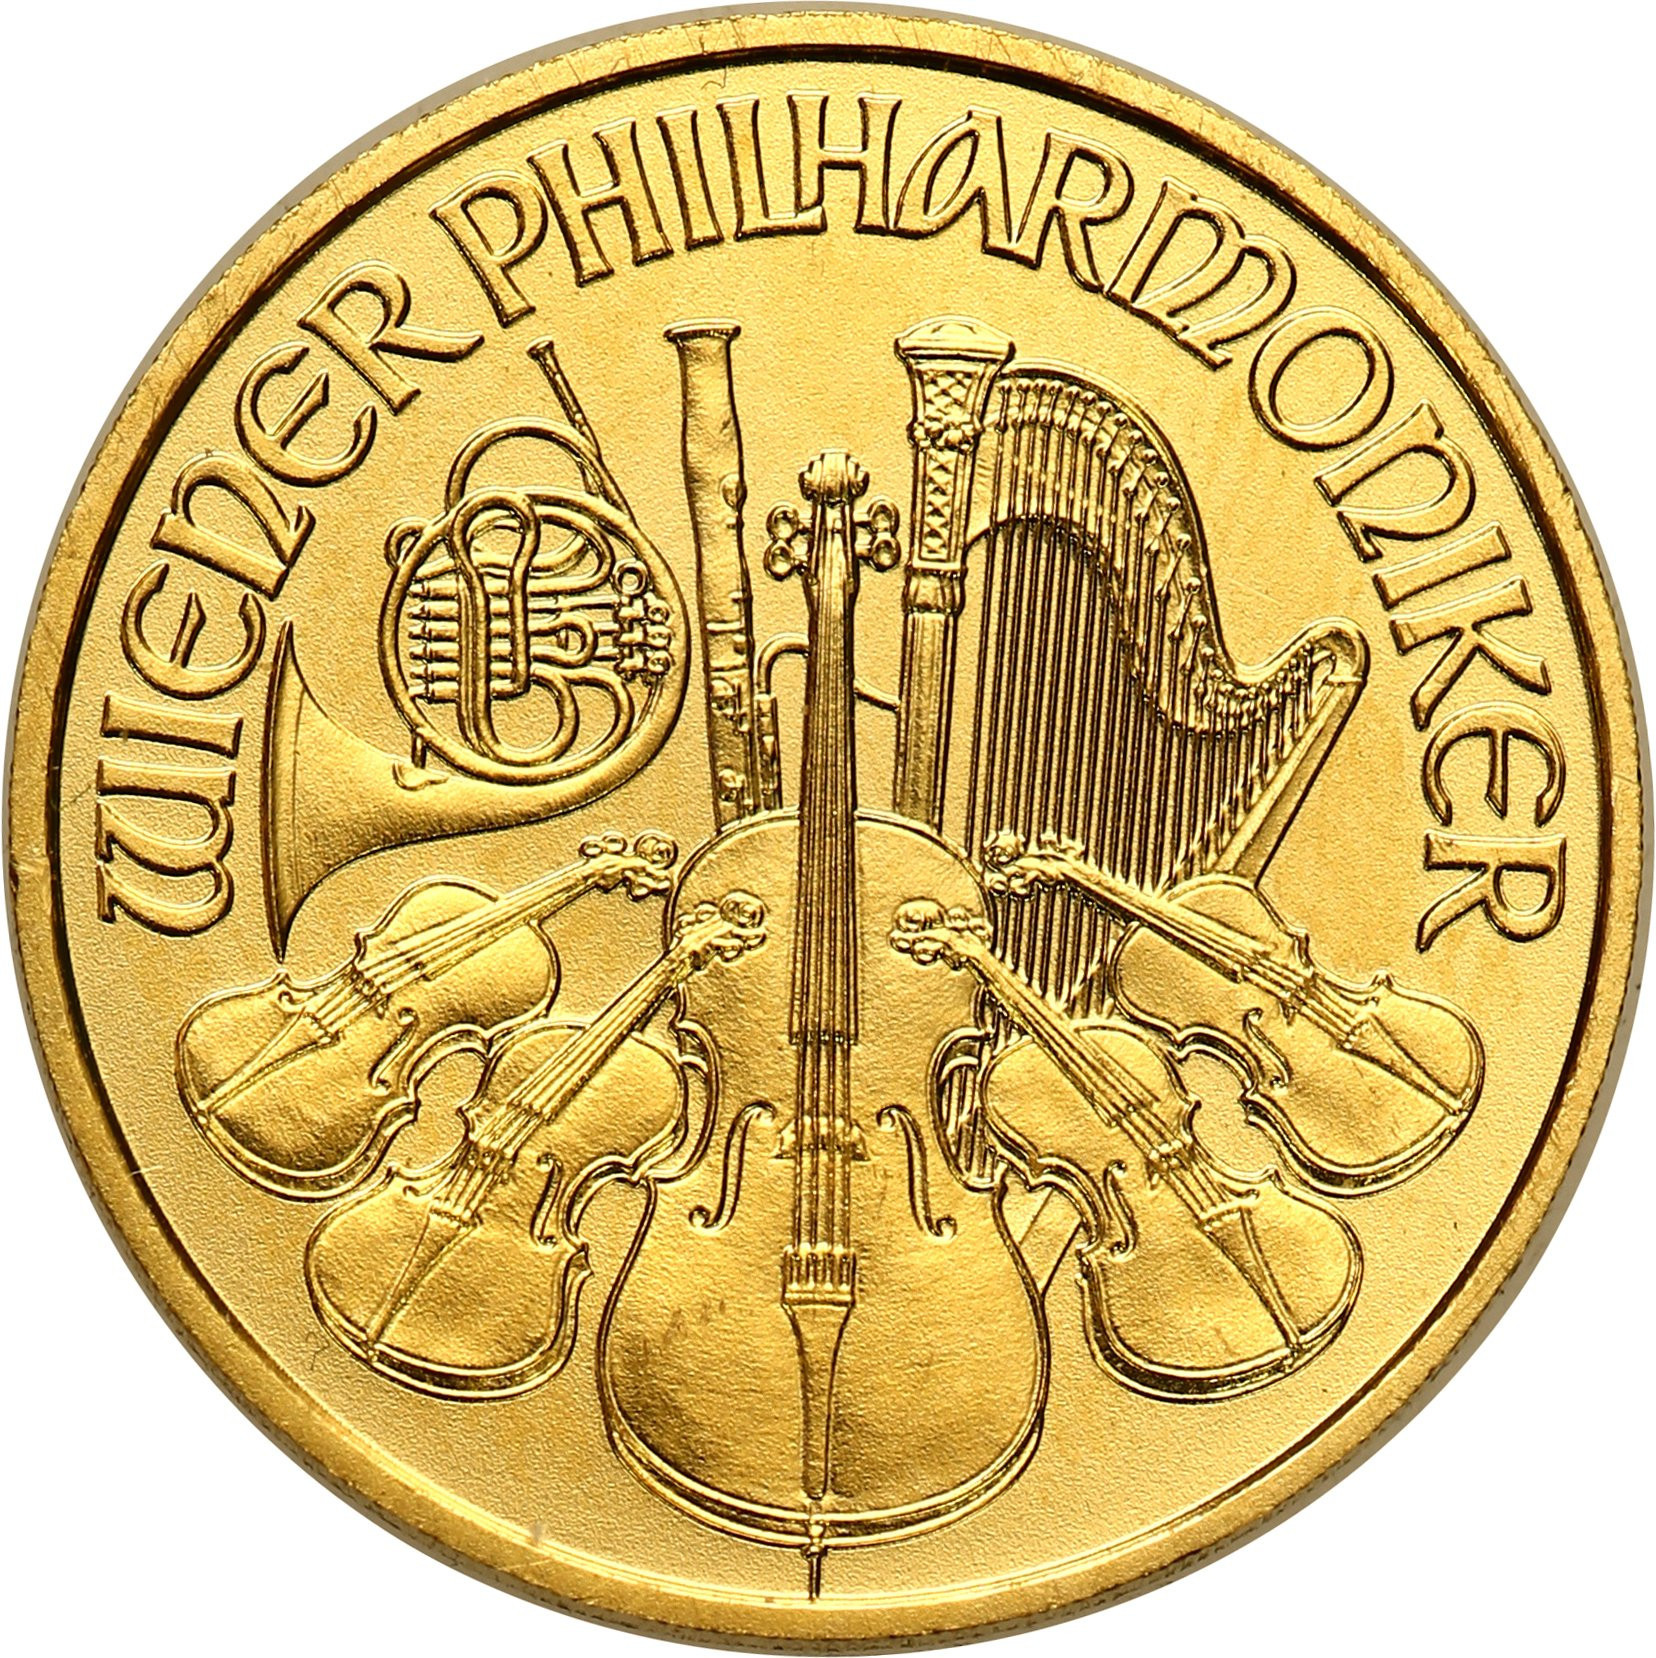 Austria. 10 Euro 2014 Filharmonicy - 1/10 uncji złota